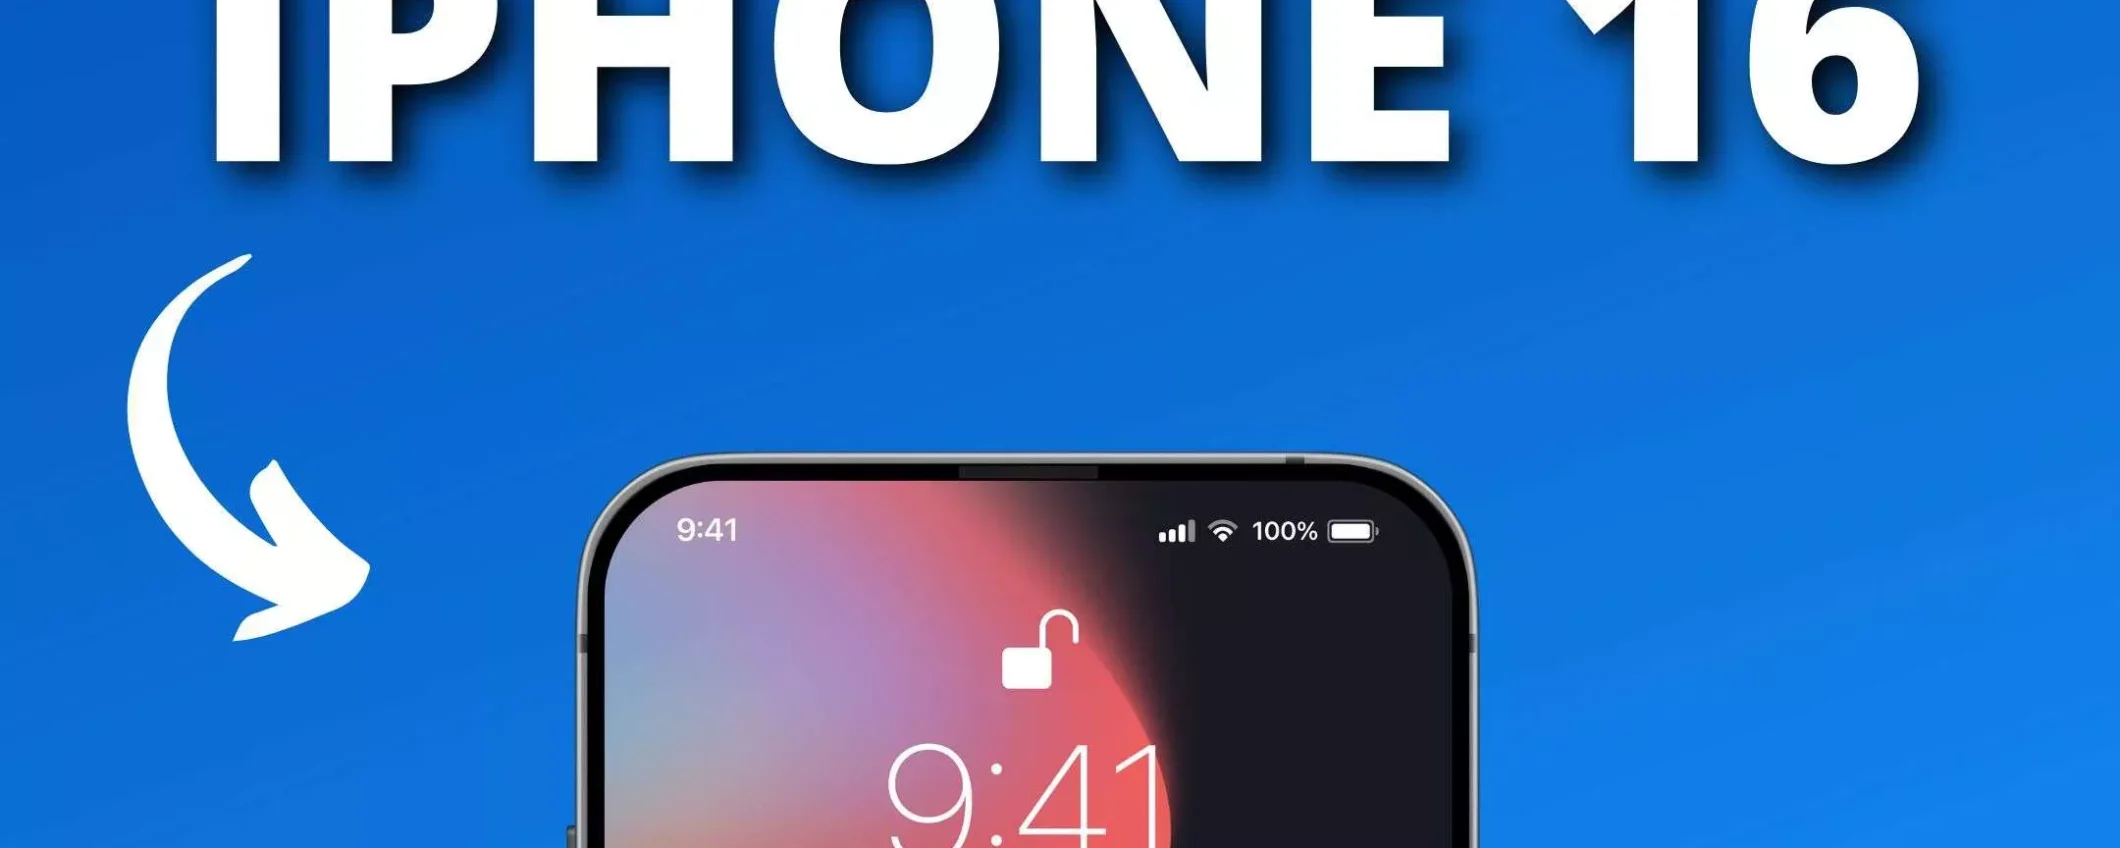 iPhone 16 avrà la stessa back cover di iPhone 15 (RUMOR)